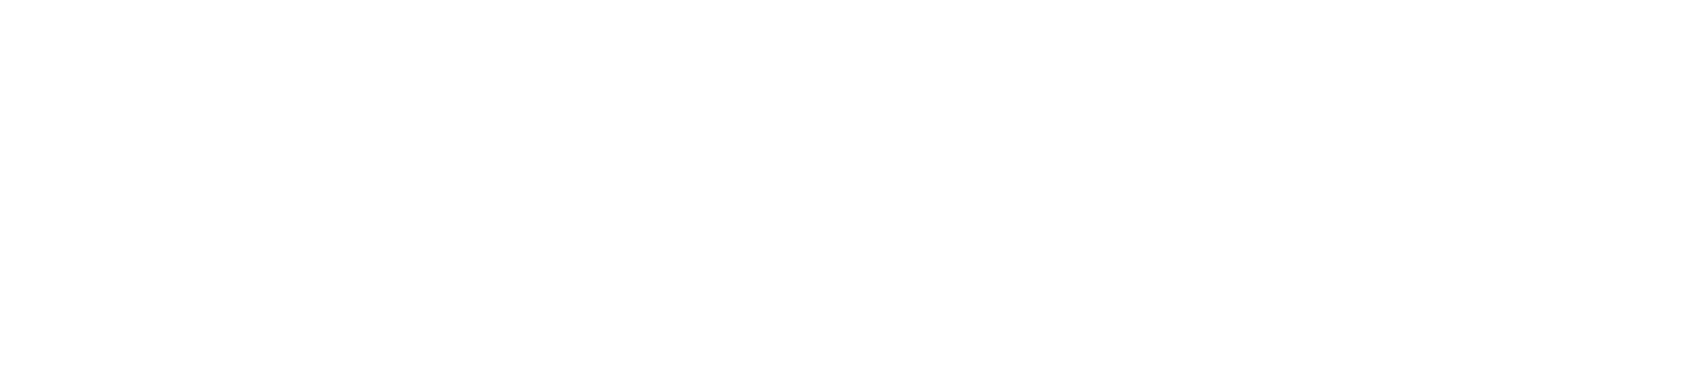 Philip Morris logo large for dark backgrounds (transparent PNG)